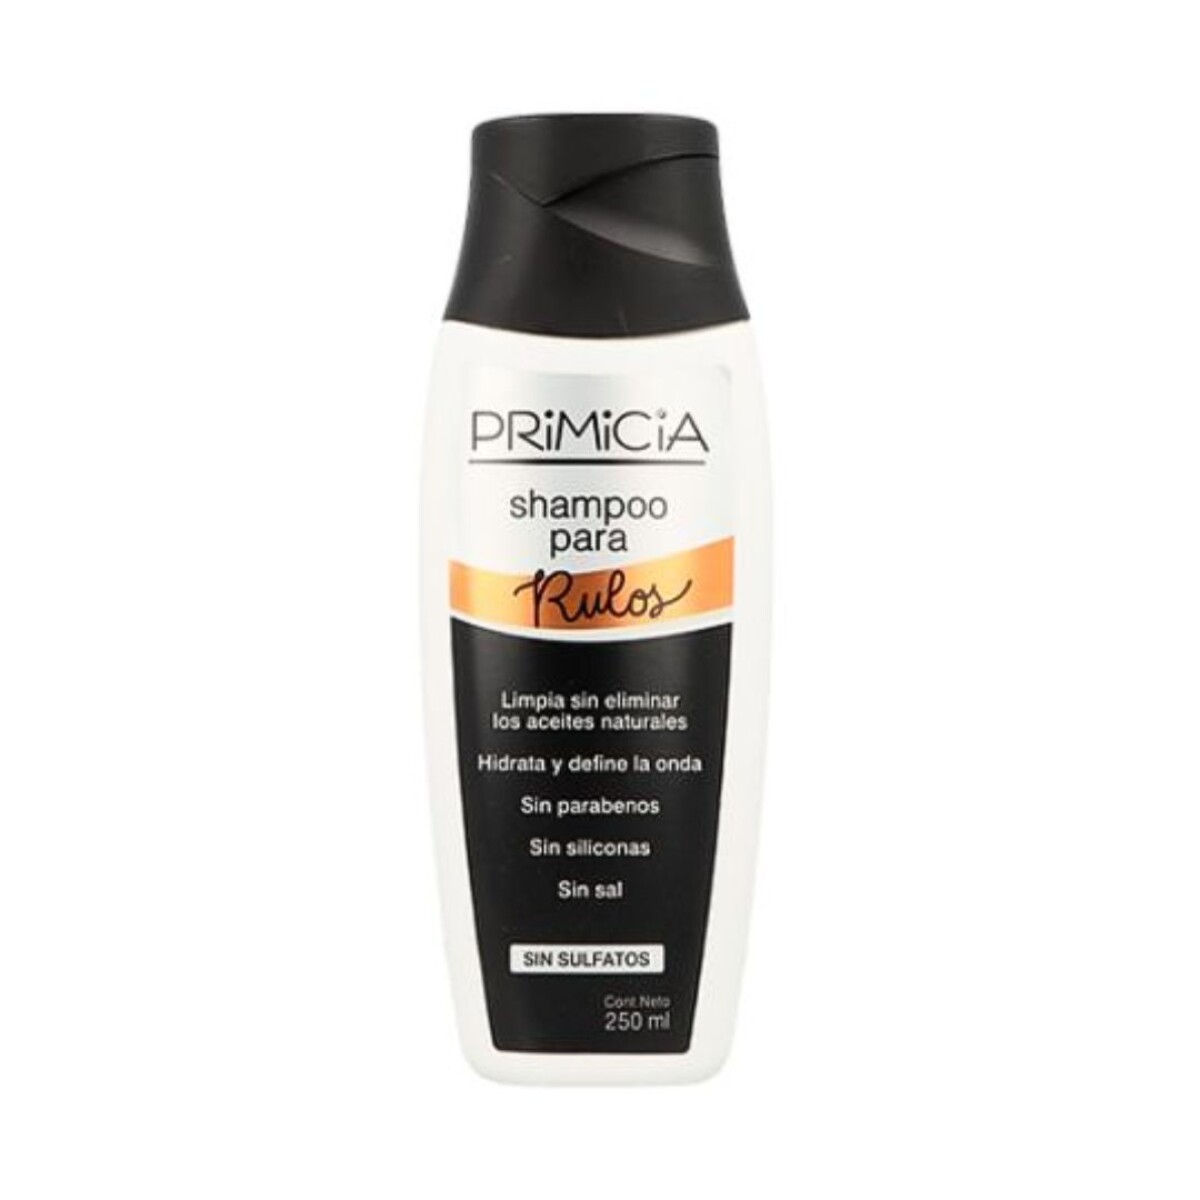 Primicia Shampoo 250ml - Rulos 